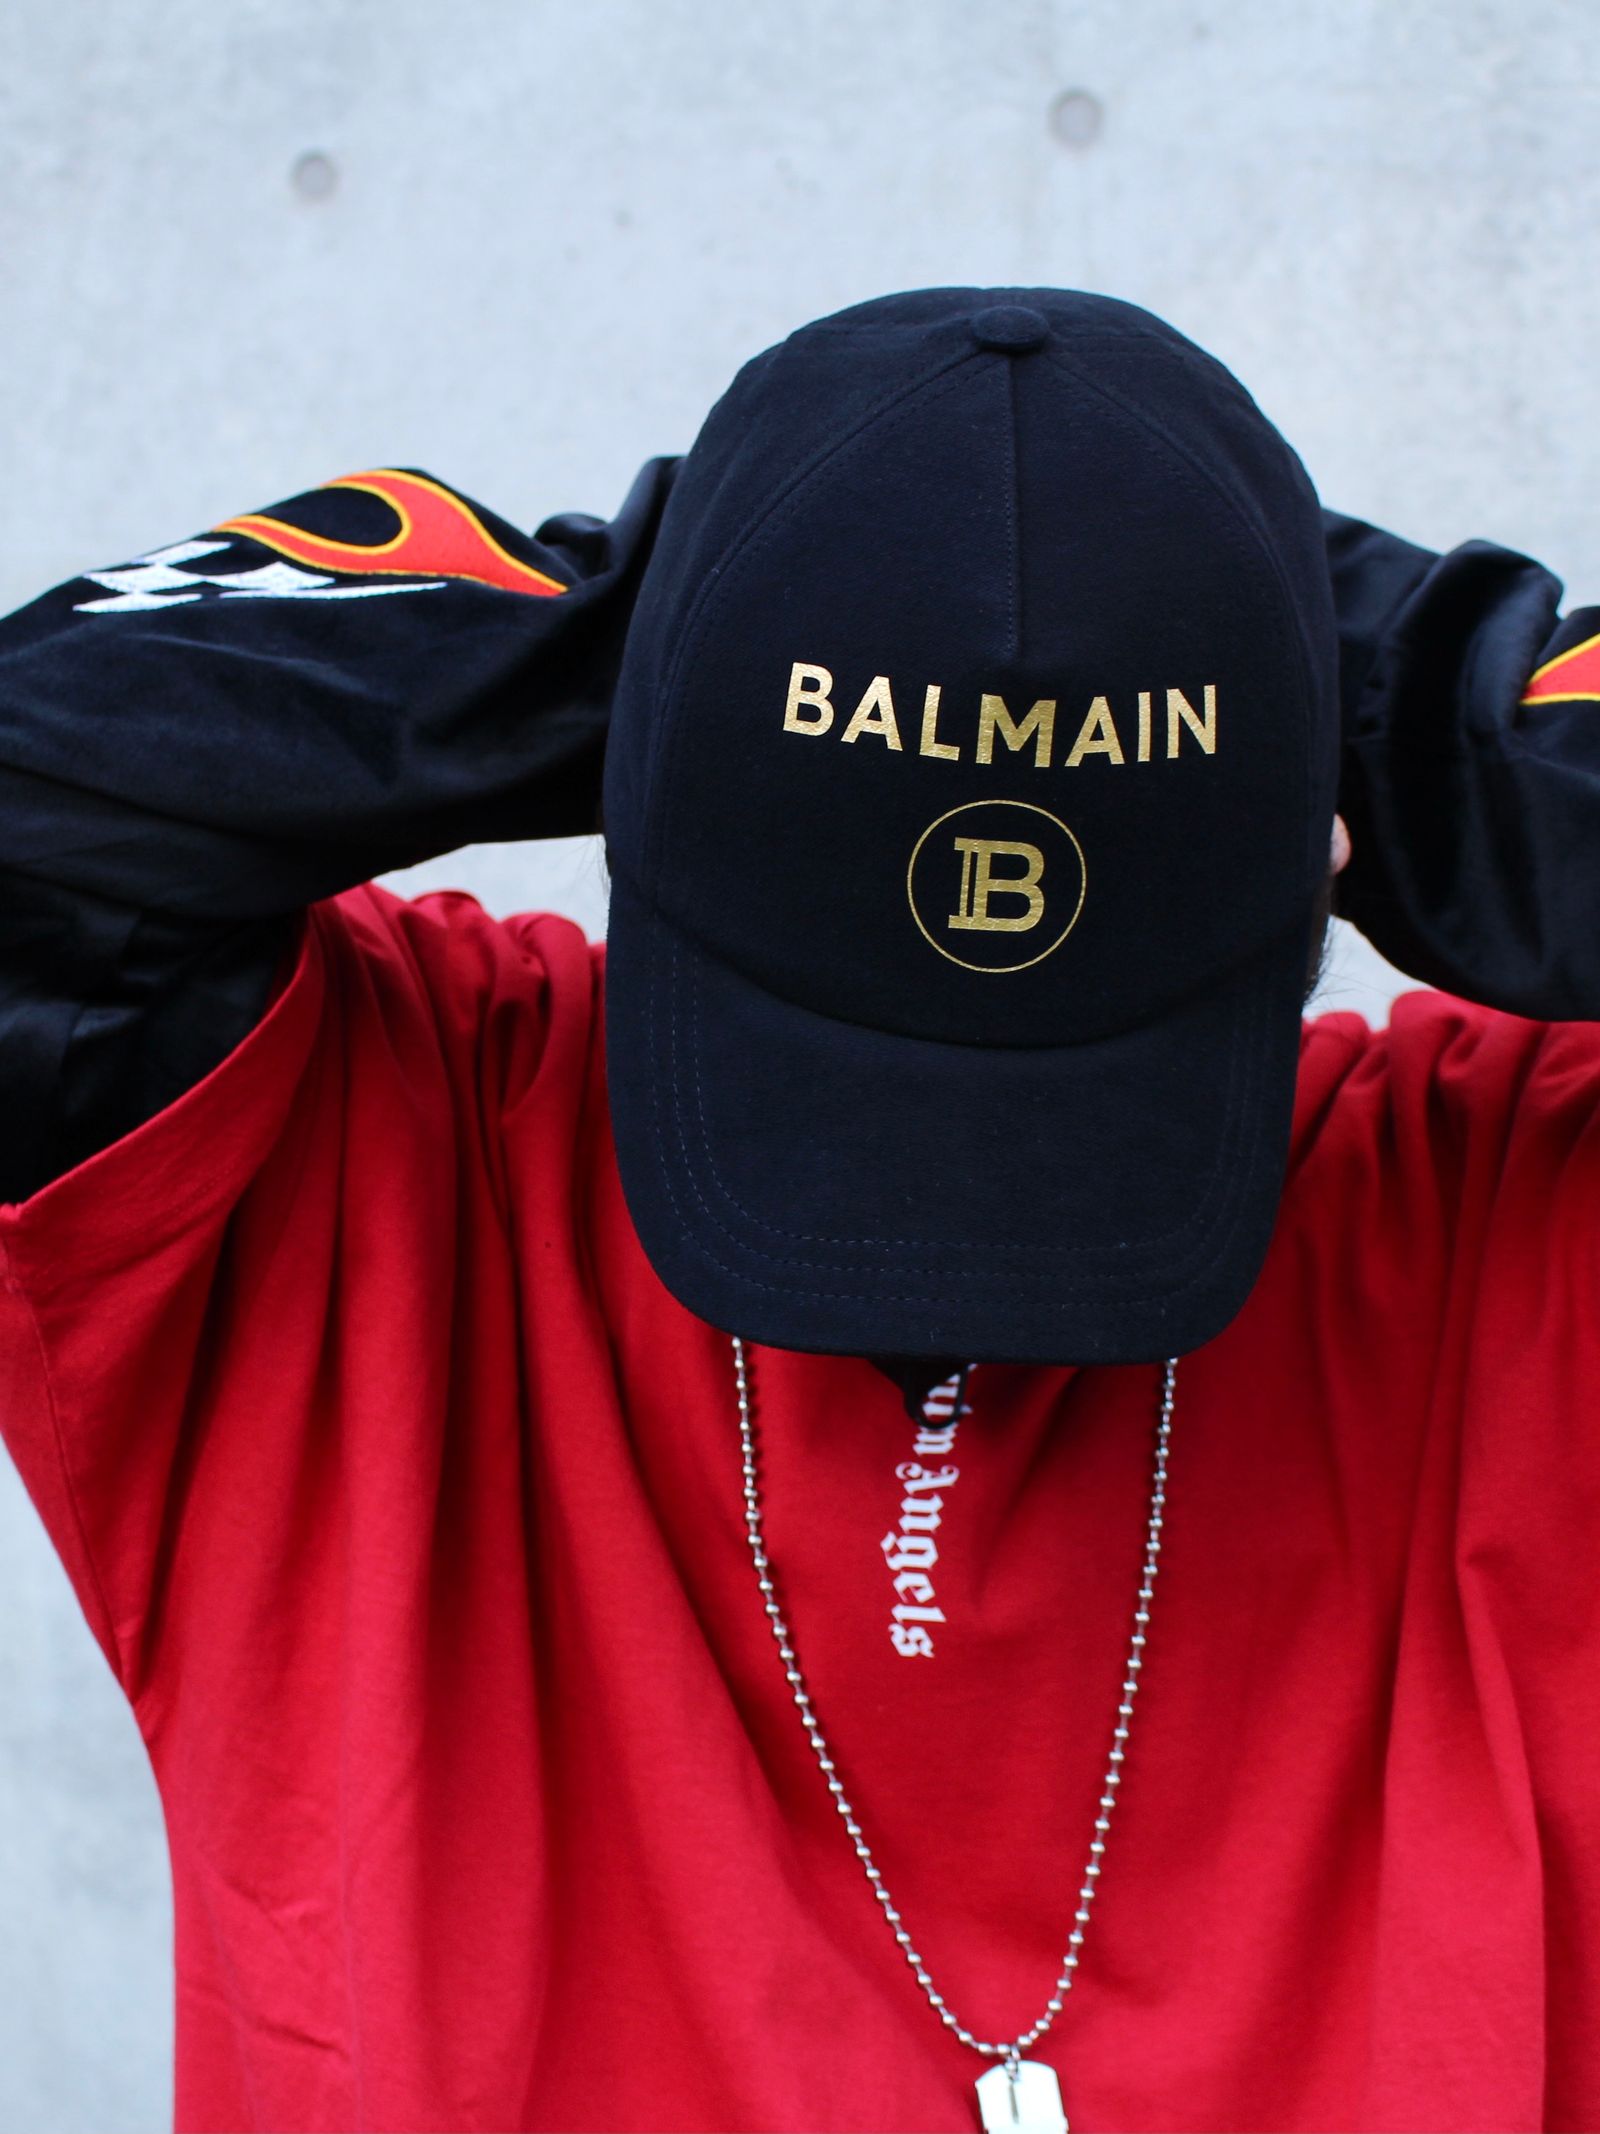 BALMAIN - Bロゴ ベースボールキャップ / BH1 ACC CAP B-LOGO COTTON 